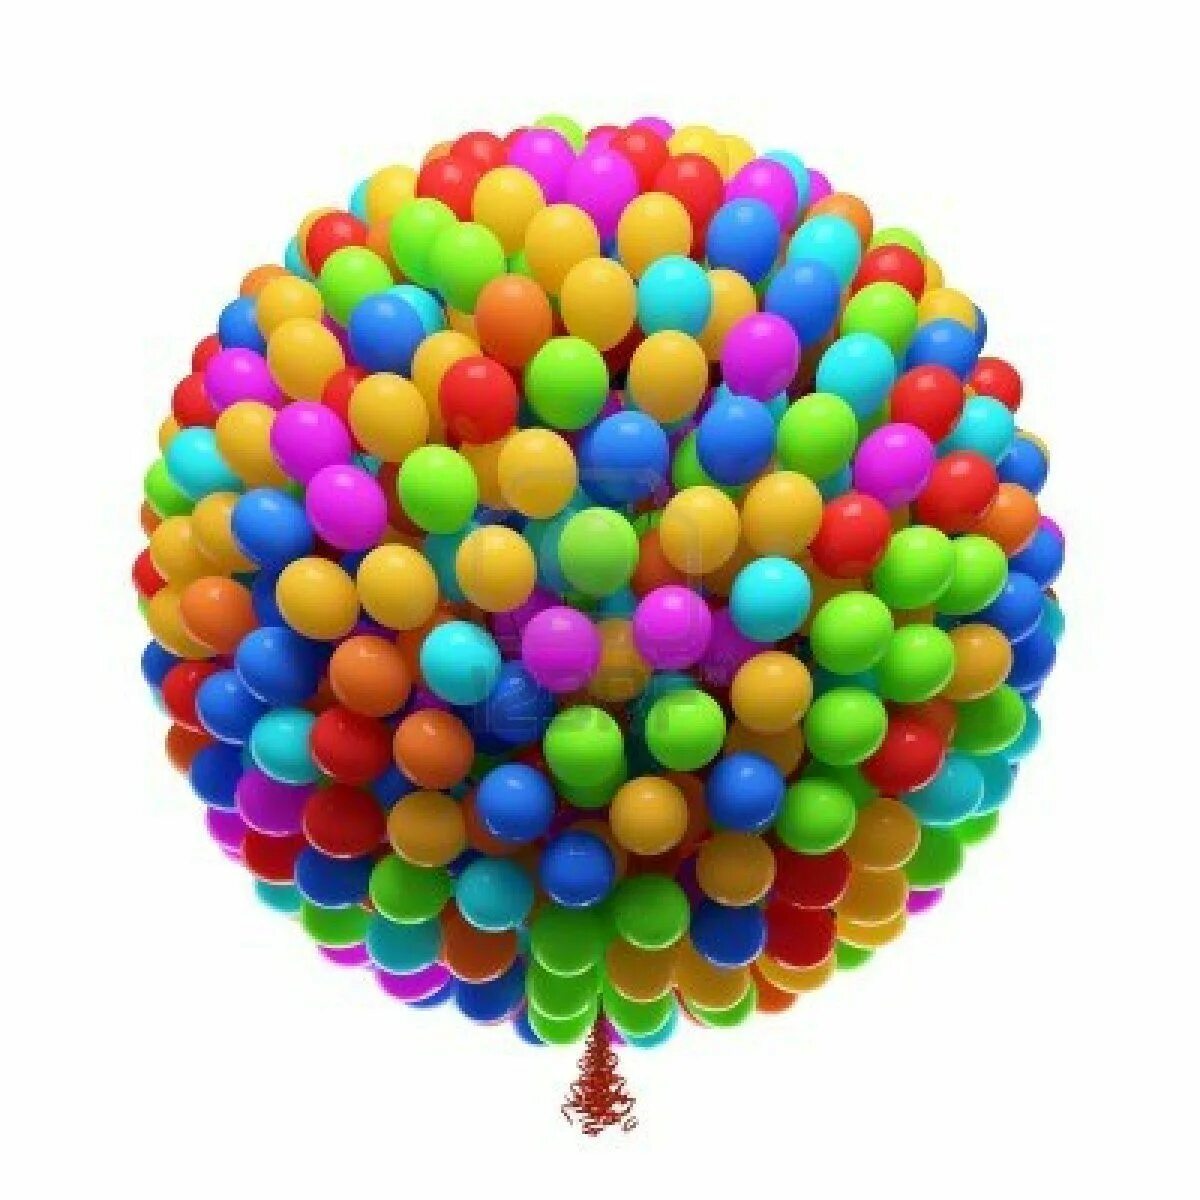 Заказать шарики с доставкой в москве недорого. Воздушный шарик. Цветные шары. Разноцветный шар. Разноцветные шарики воздушные.